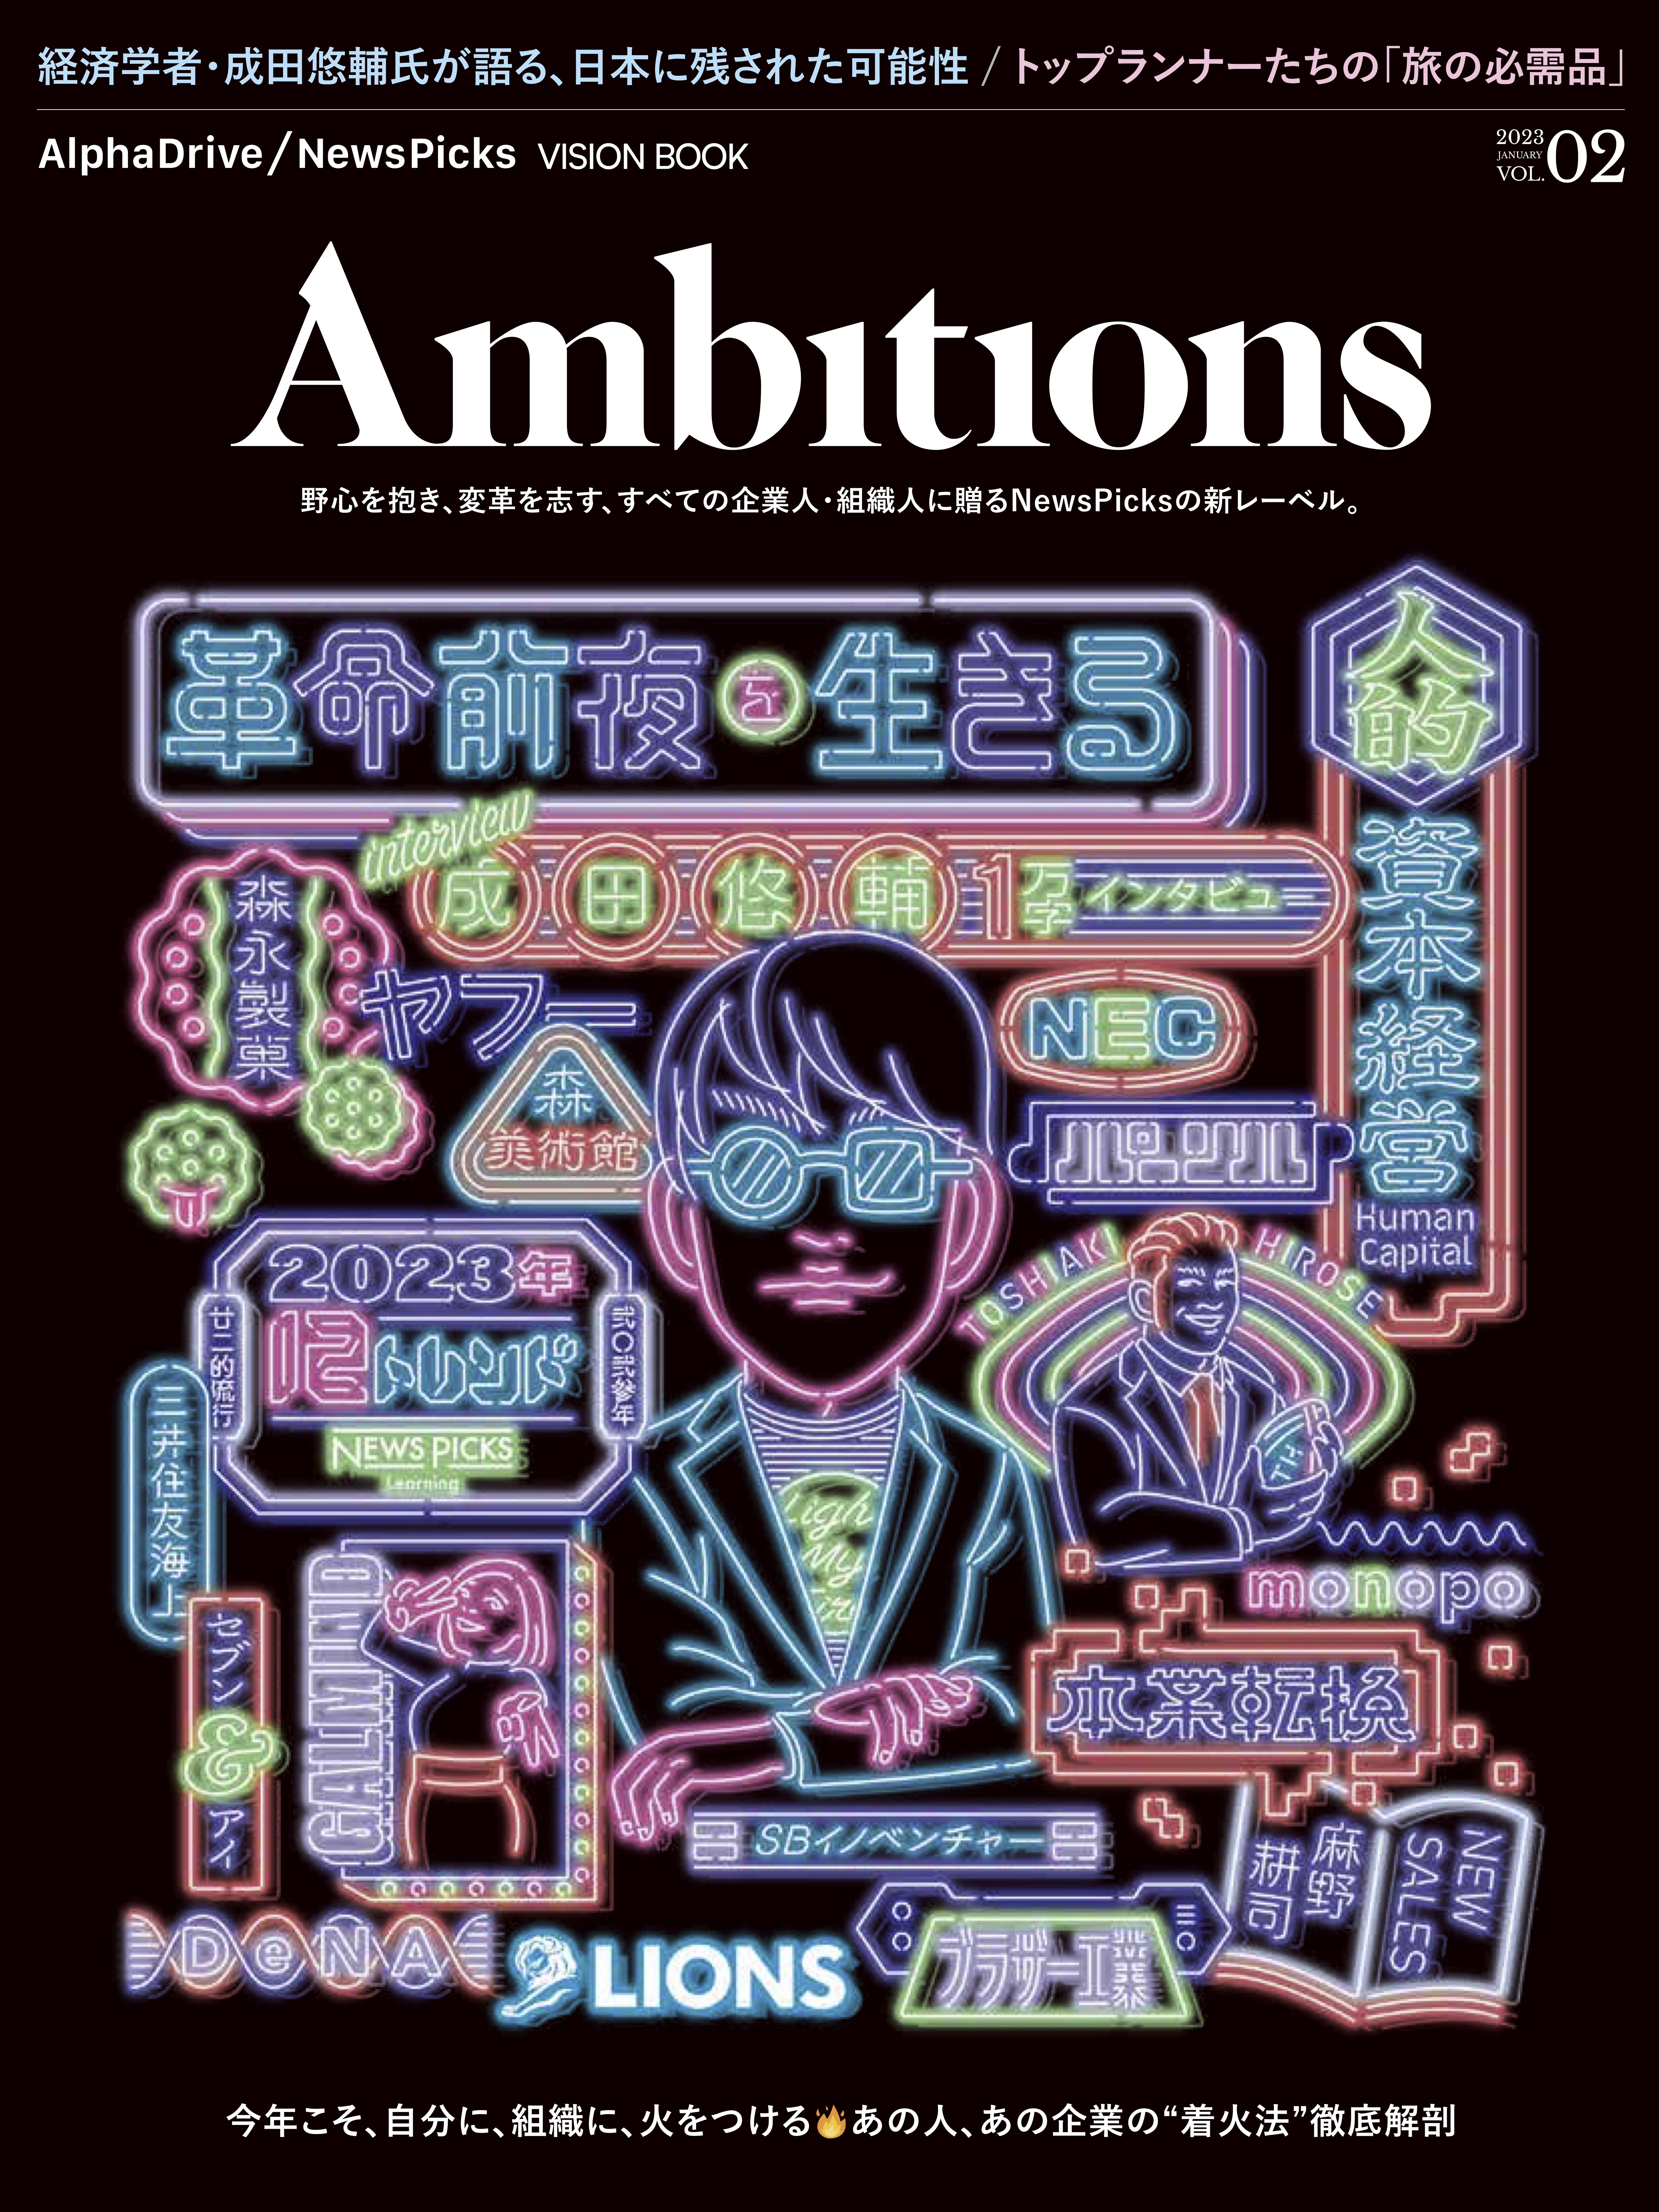 【2023/1/20発売・ビジネス誌】AlphaDrive/NewsPicks VISION BOOK 『Ambitions　Vol.2』